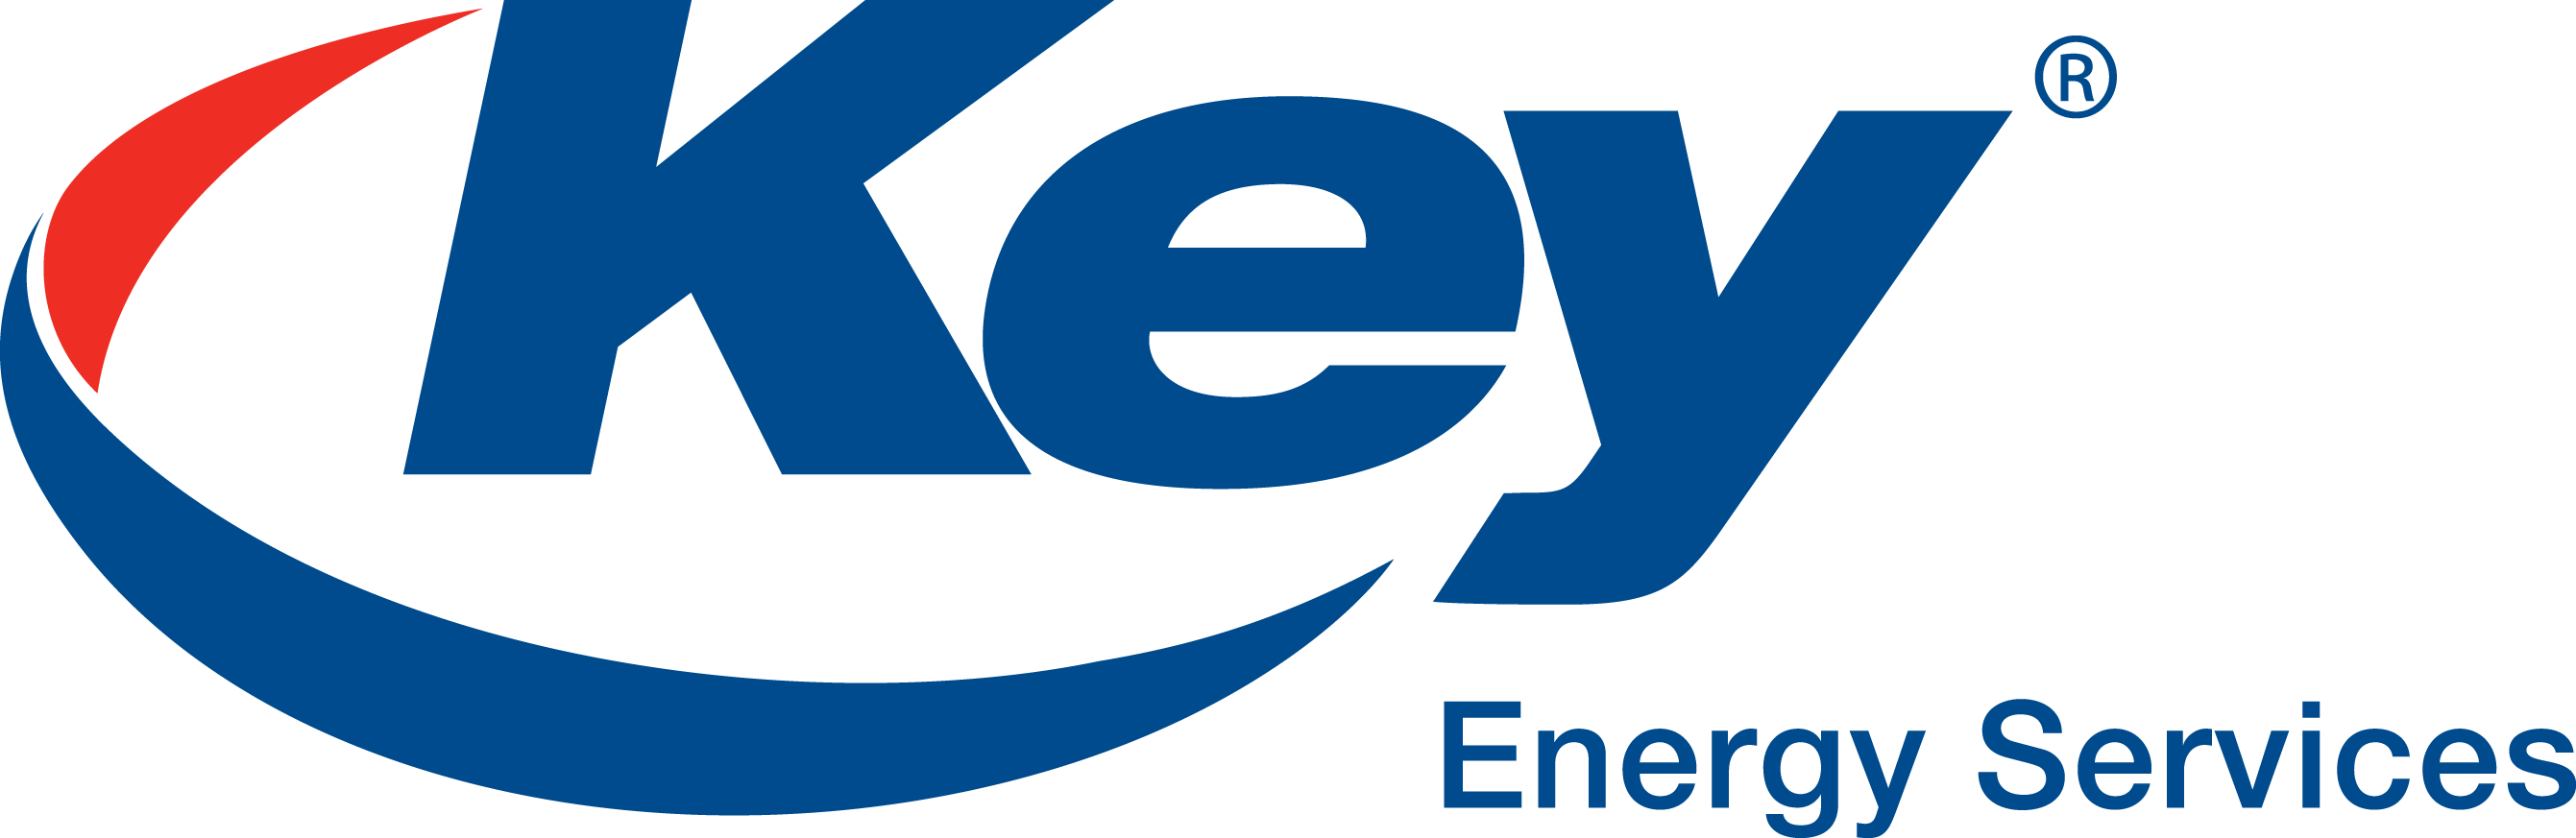 Key Energy Services